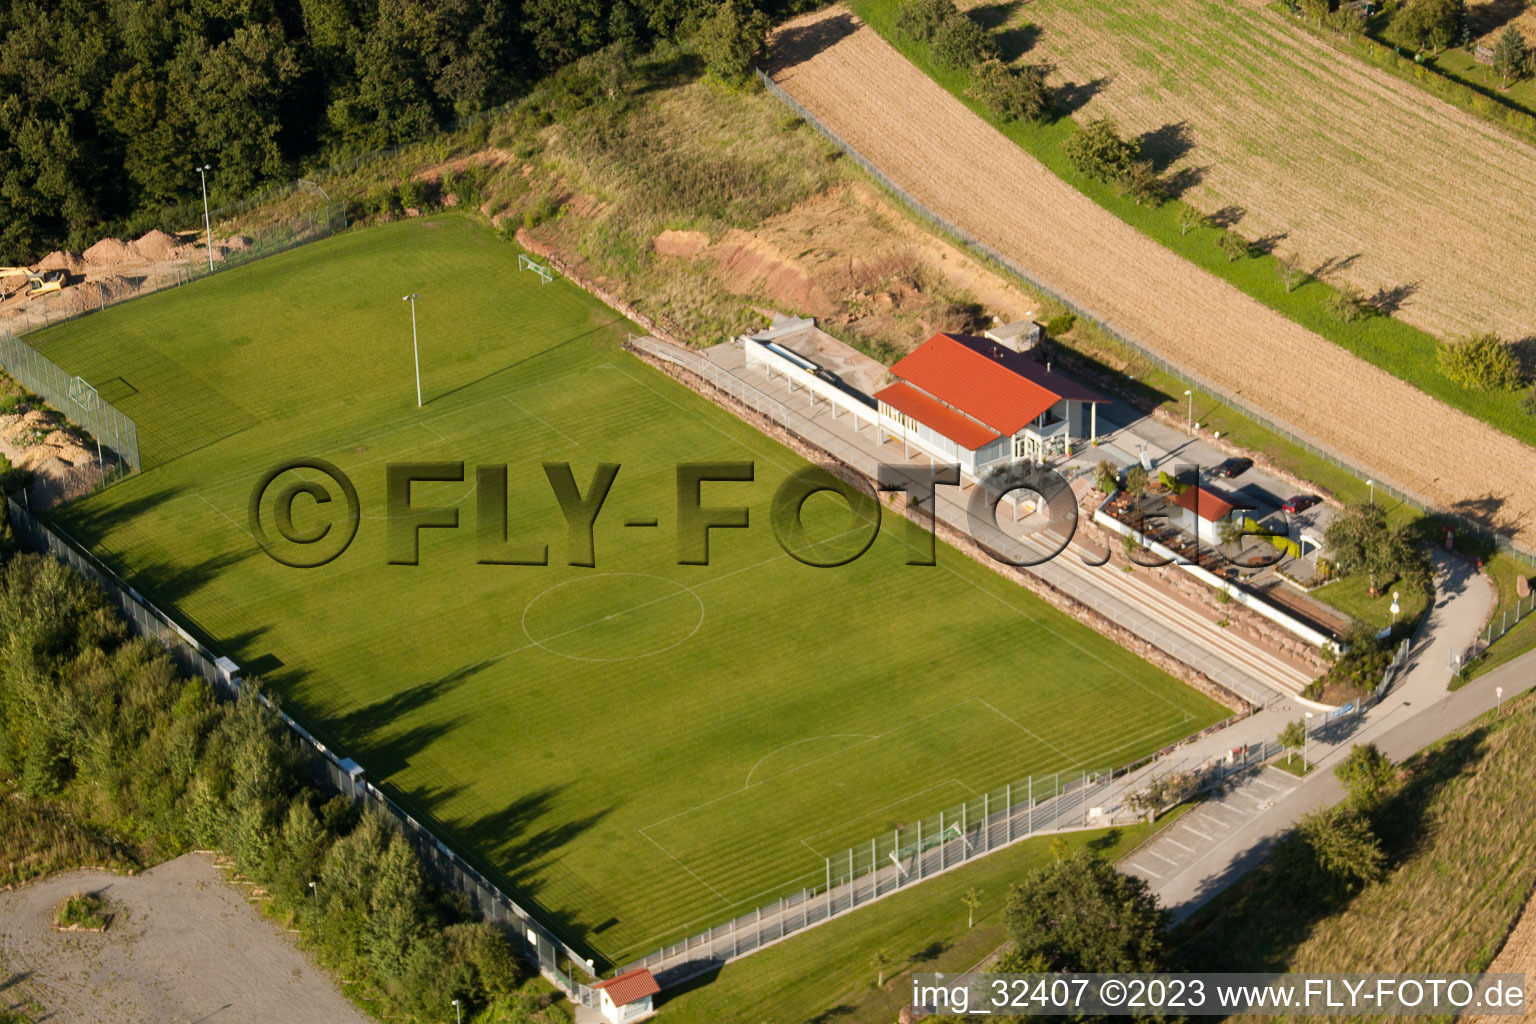 Stade Pneuhage à le quartier Auerbach in Karlsbad dans le département Bade-Wurtemberg, Allemagne vue d'en haut